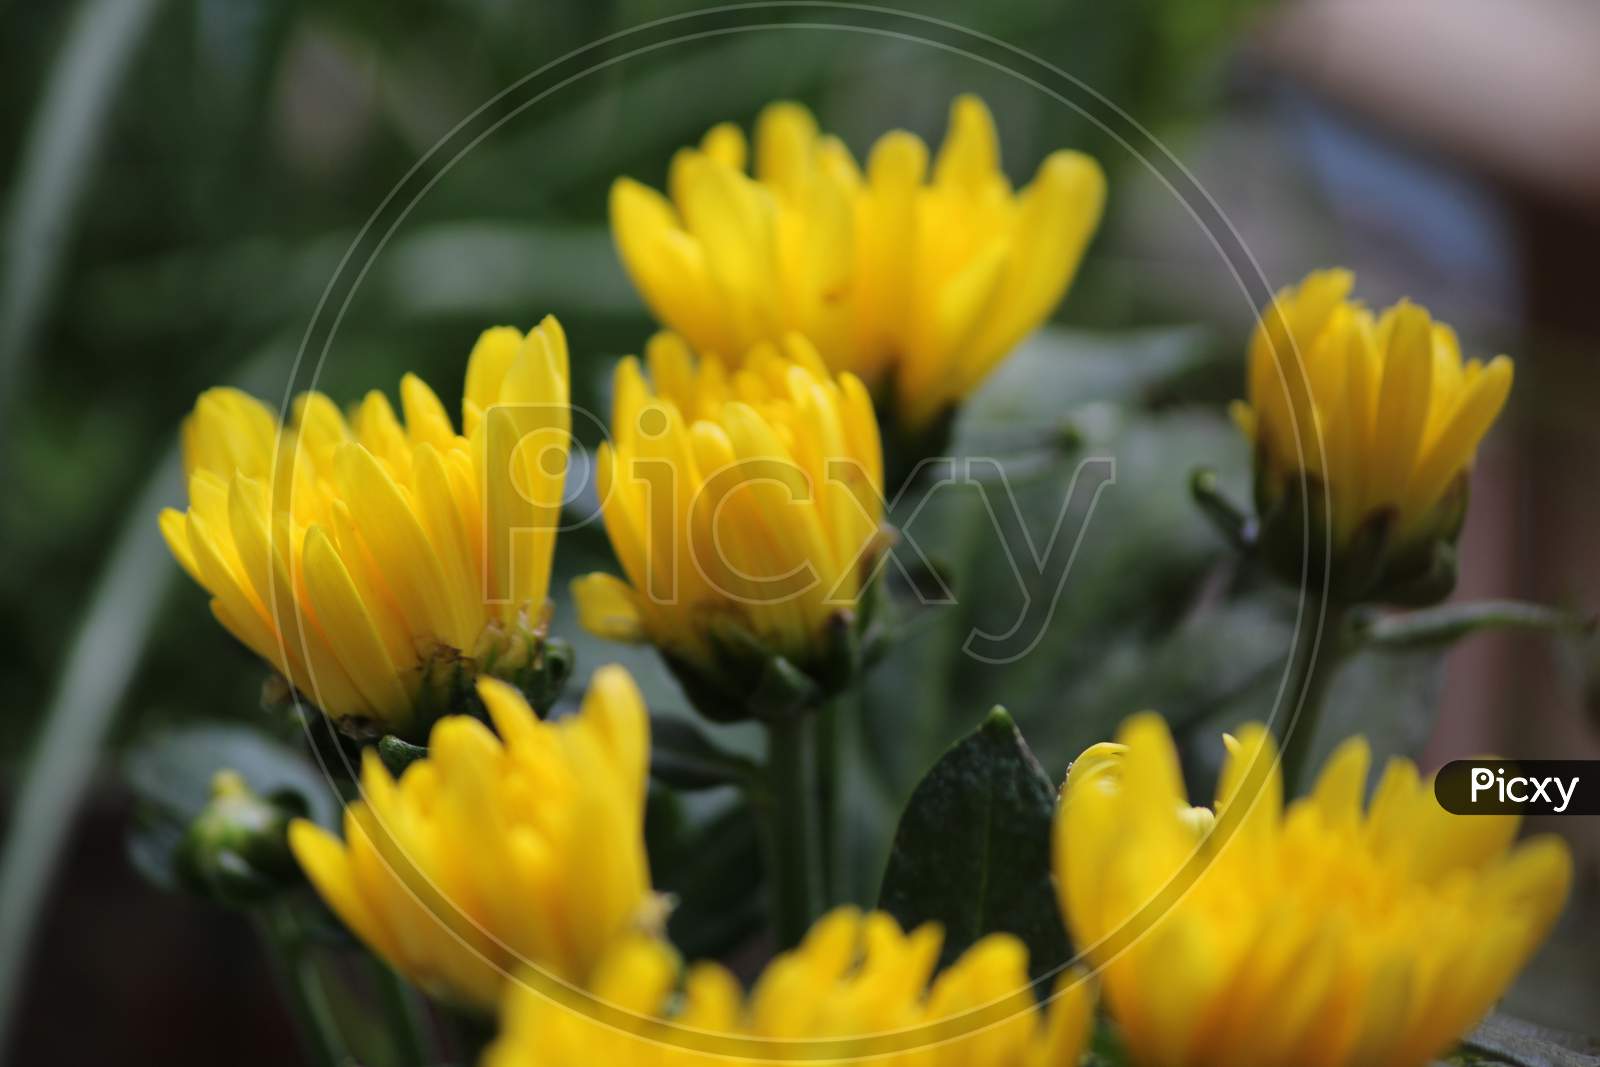 Yellow Shewanti flower -Chrysanthemums